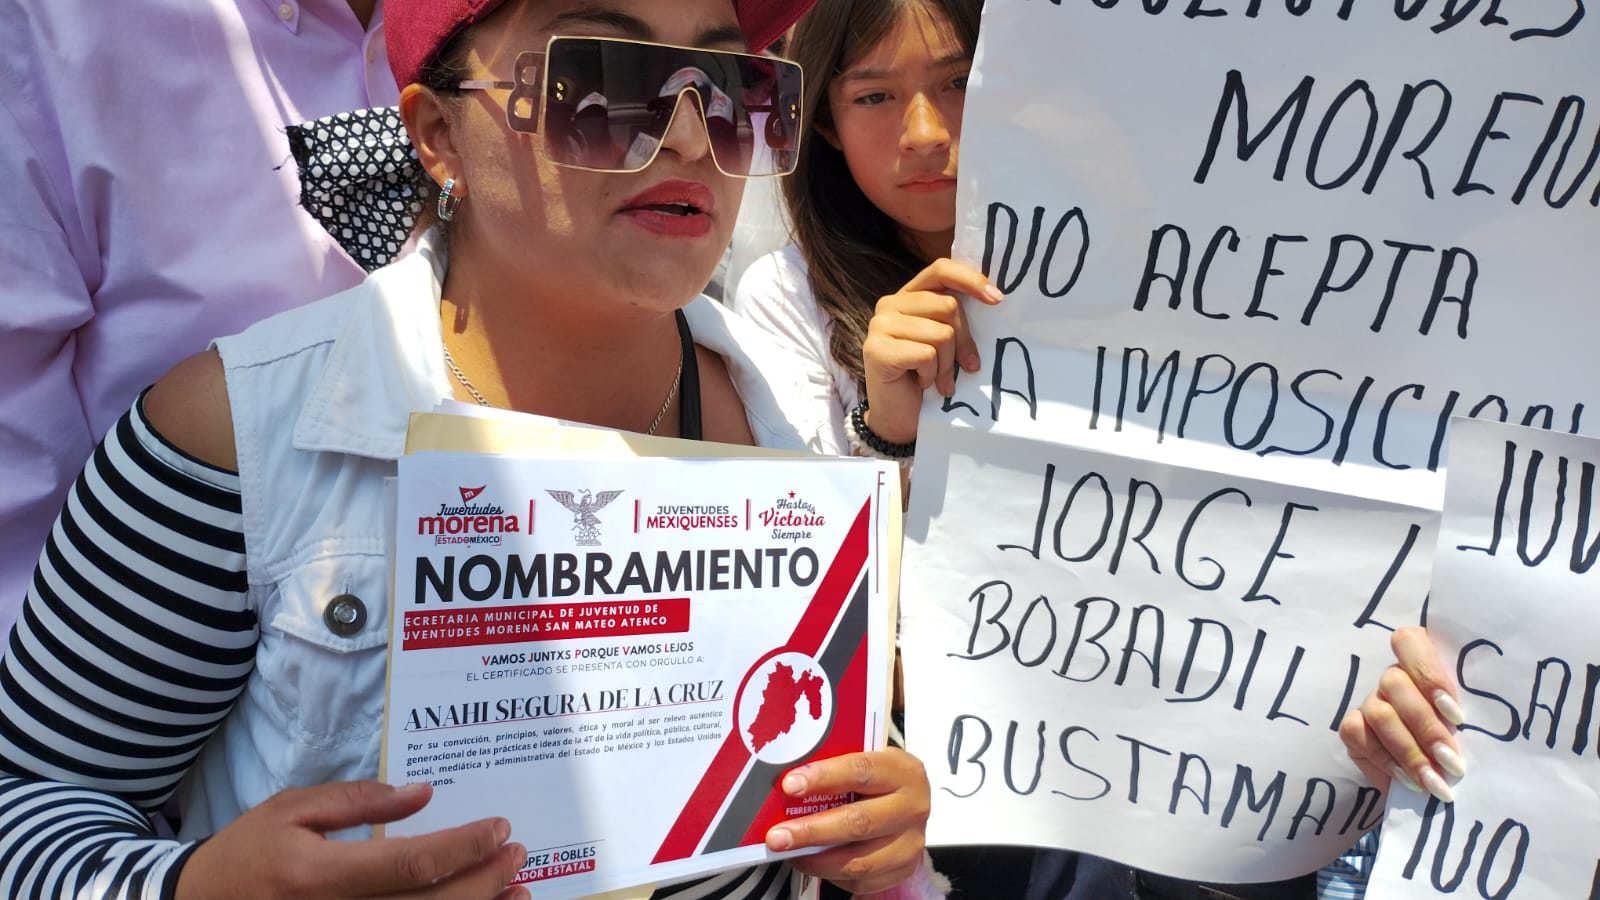  «NO QUEREMOS IMPOSICIONES»: MORENISTAS DE SAN MATEO ATENCO